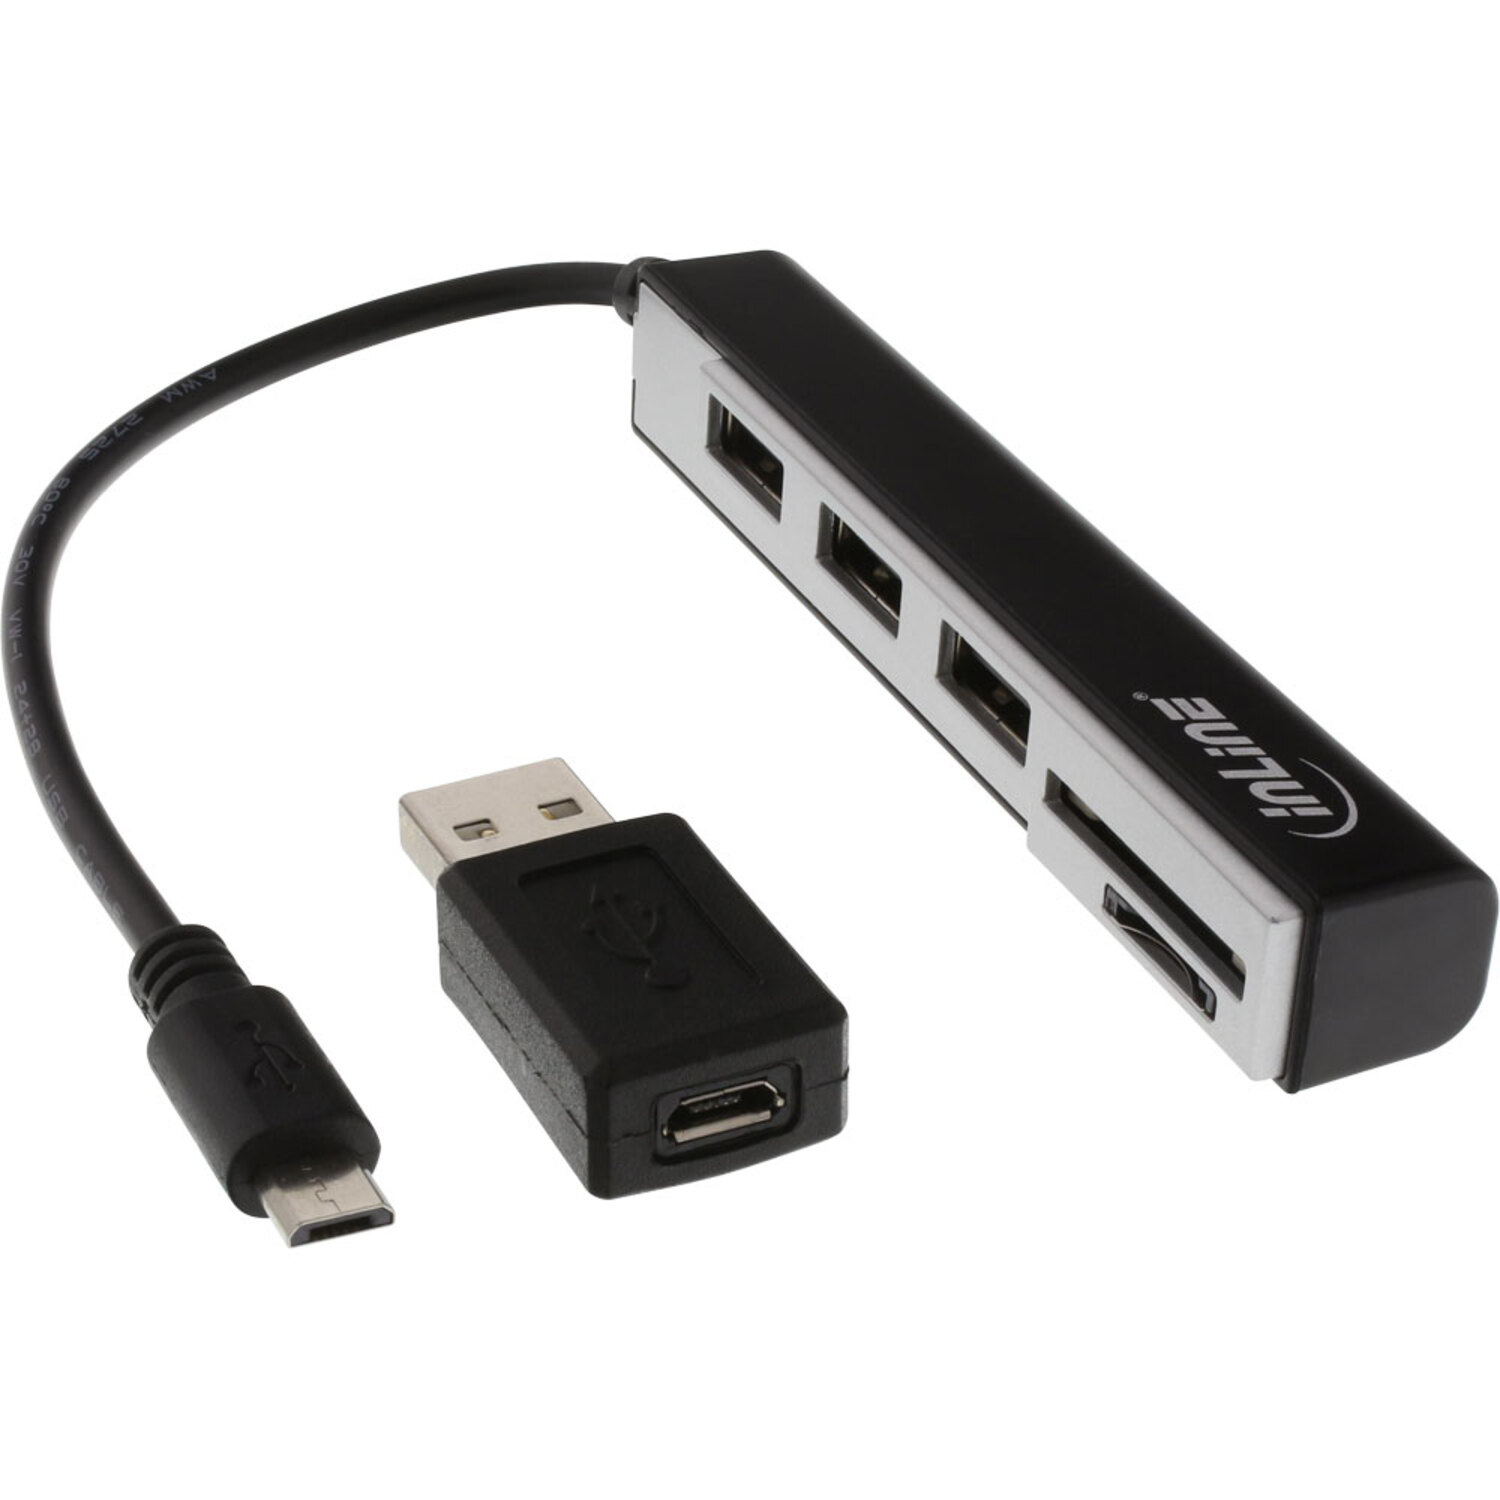 2.0 SDXC / mehrfarbig & INLINE USB Cardreader 3-fach USB InLine® OTG, Hub, USB mit OTG und für